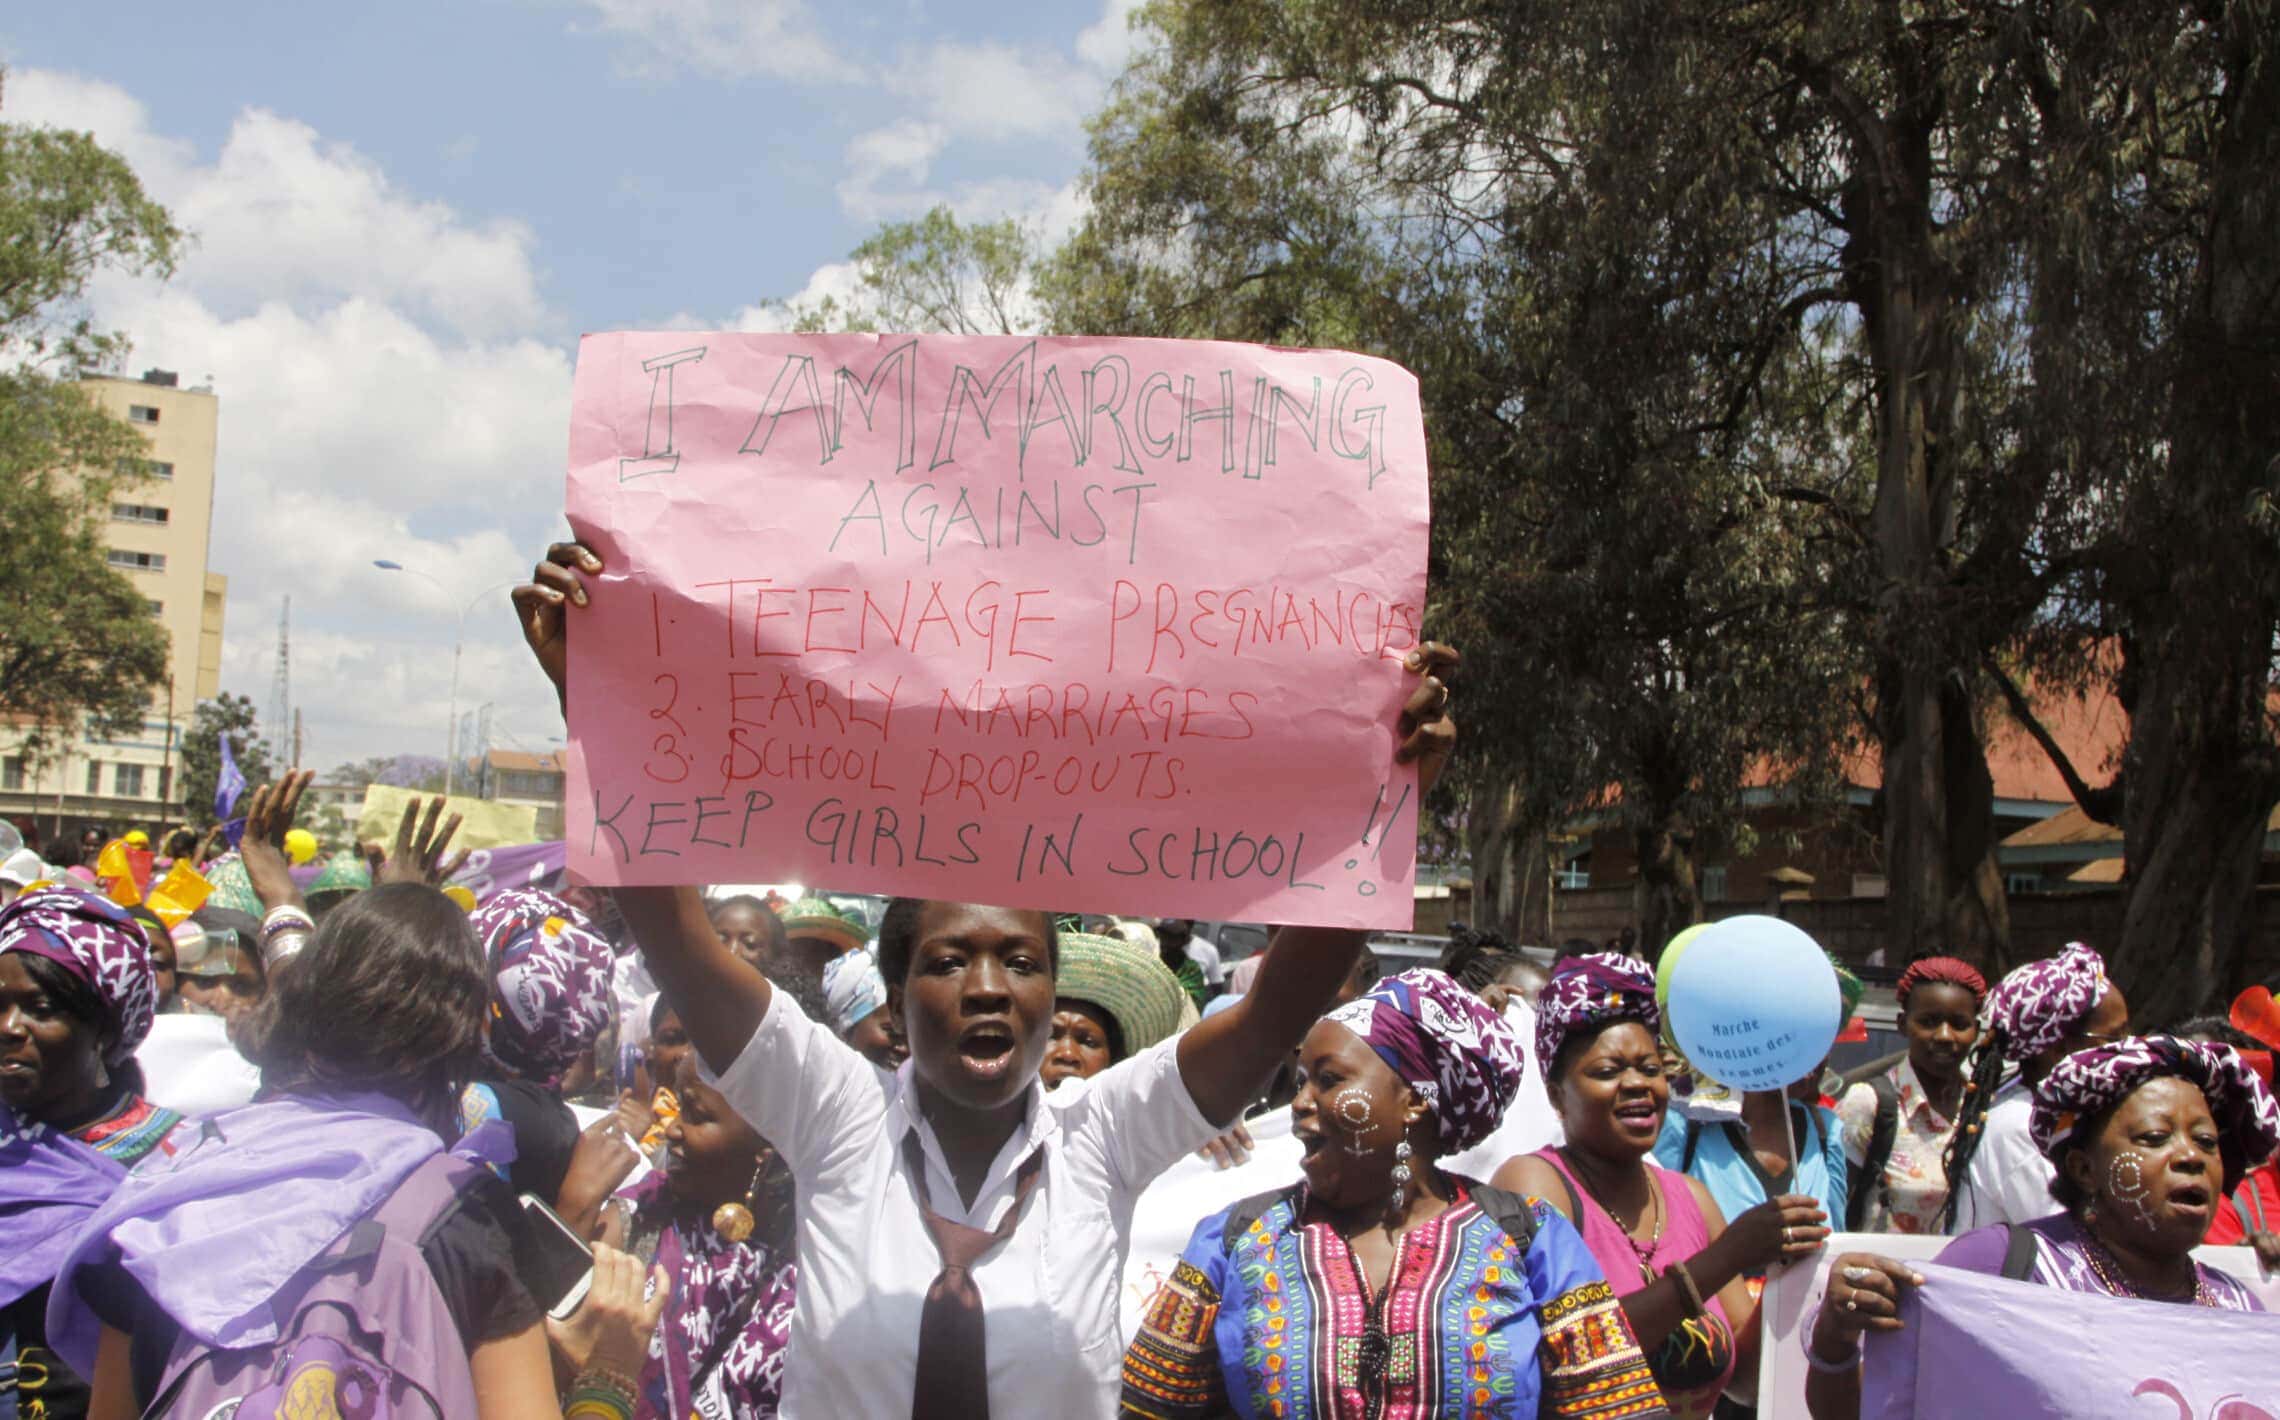 נשים מקניה, אוגנדה, טנזניה, רואנדה ובורונדי מפגינות נגד נישואי קטינים, הטרדות מיניות ומילת נשים, קניה, 13 באוקטובר 2015 (צילום: AP Photo/Khalil Senosi)